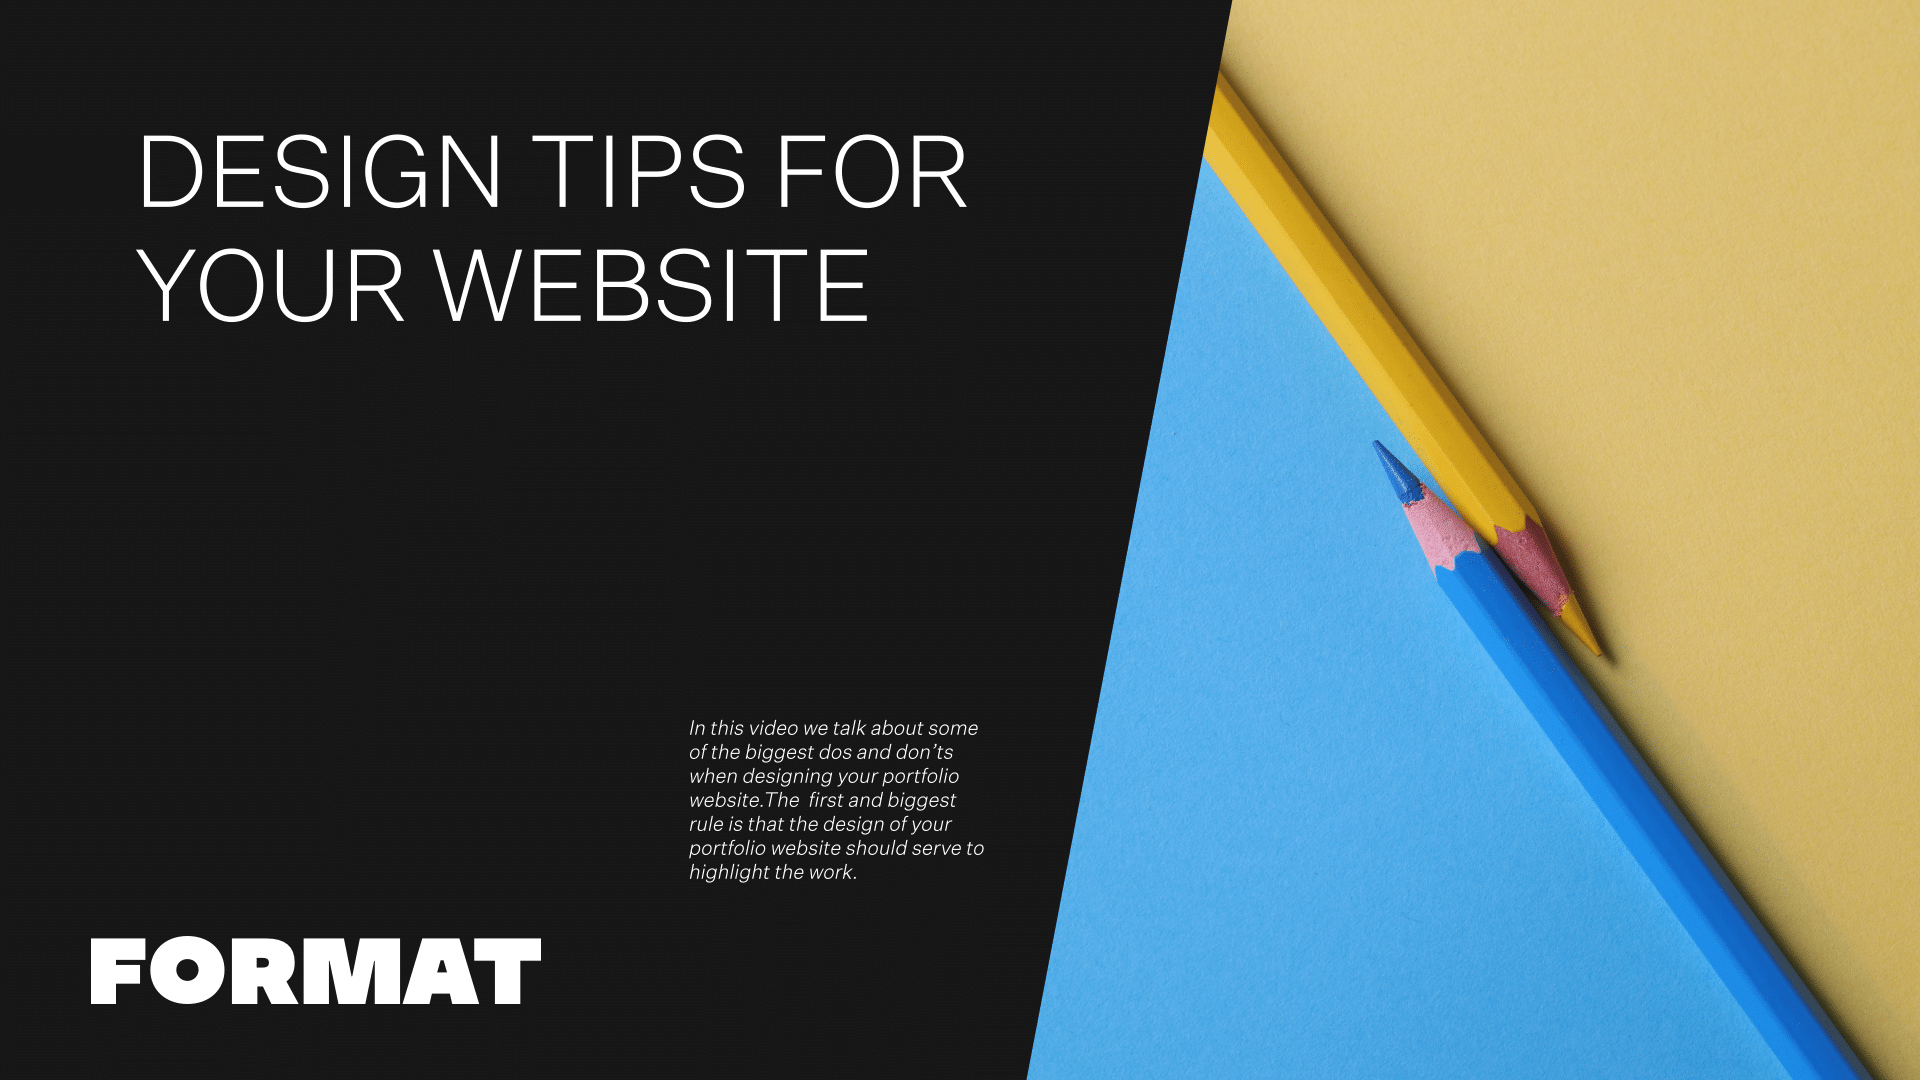 El texto de la imagen dice "Consejos de diseño para su página web" e incluye dos lápices de colores